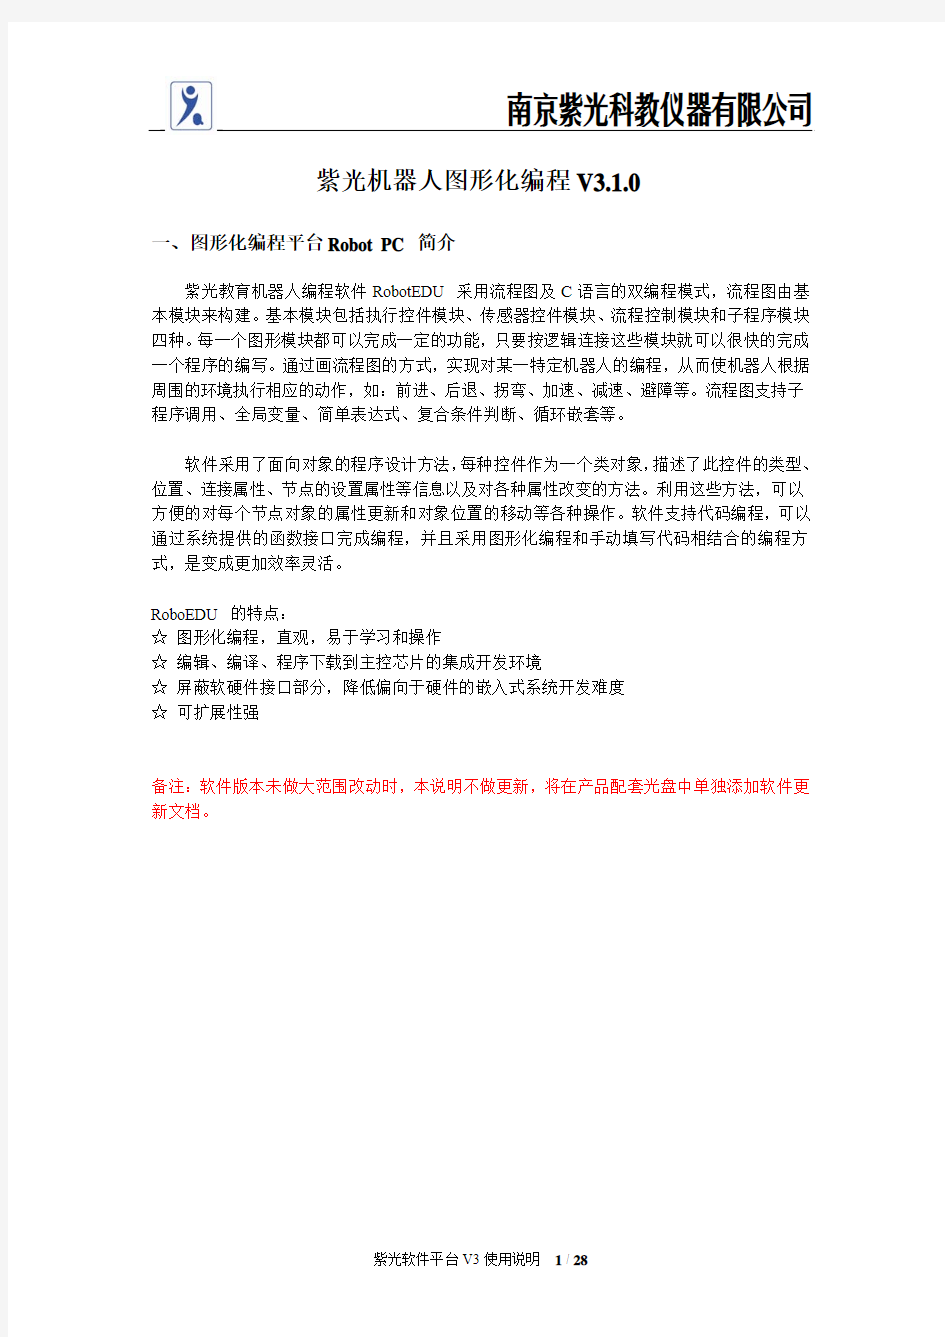 南京紫光教育机器人平台V3.1.0使用说明